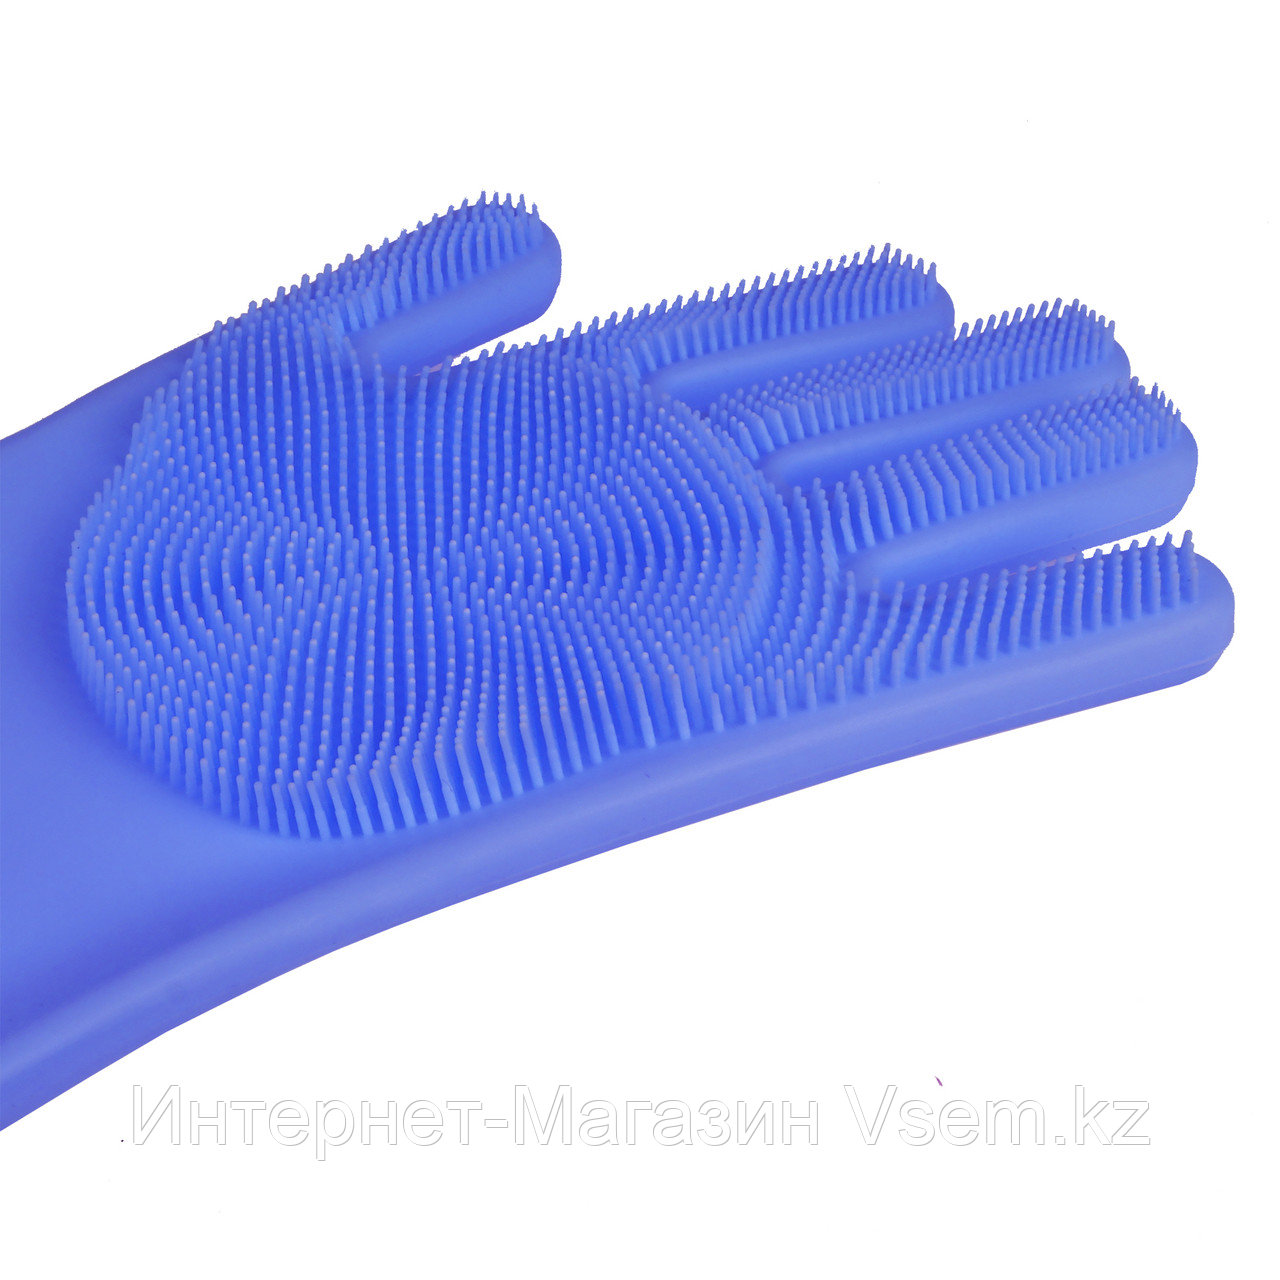 Силиконовые перчатки для мытья посуды, цвет голубой